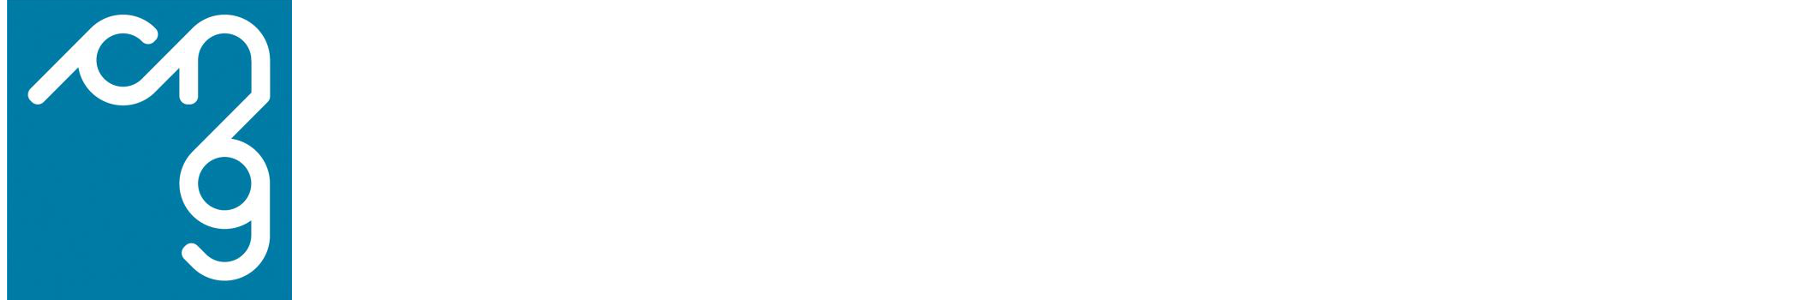 Consiglio Nazionale Geometri